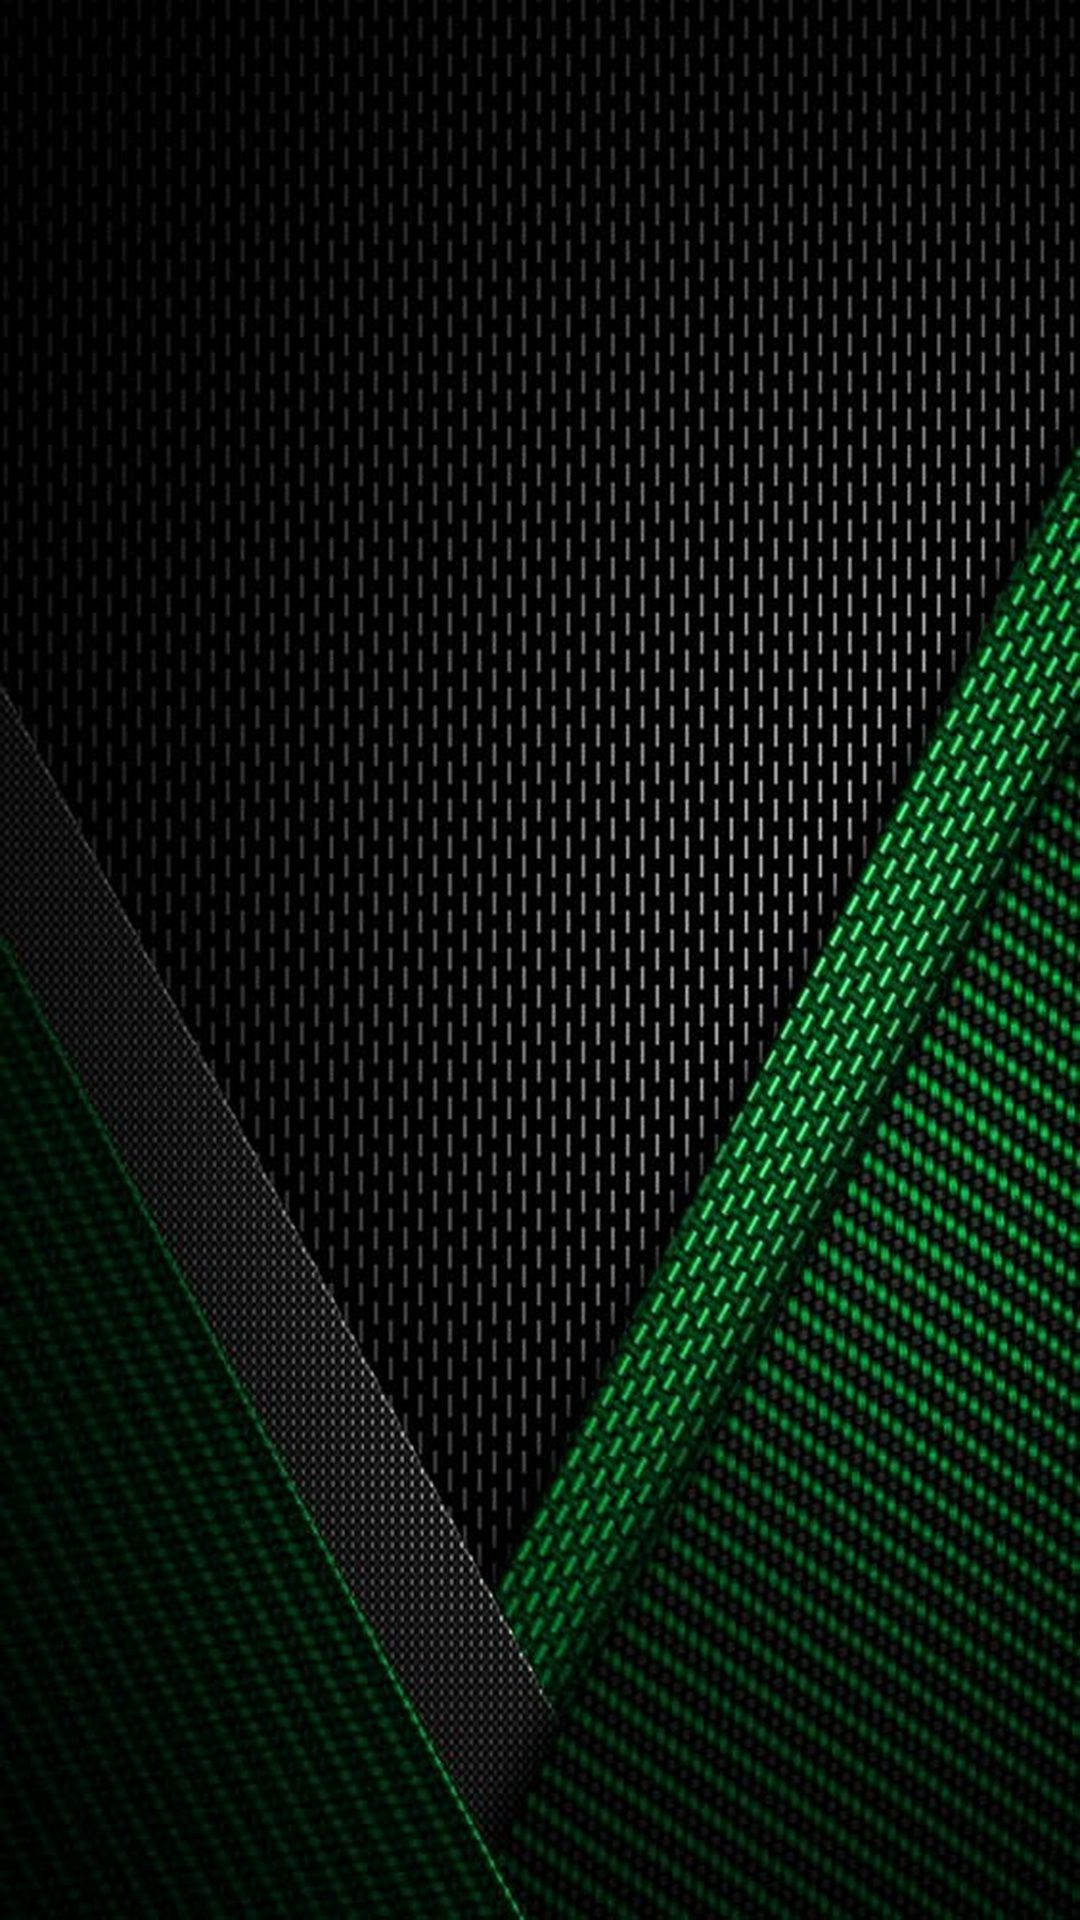 Fondos de pantalla verde y negro - FondosMil